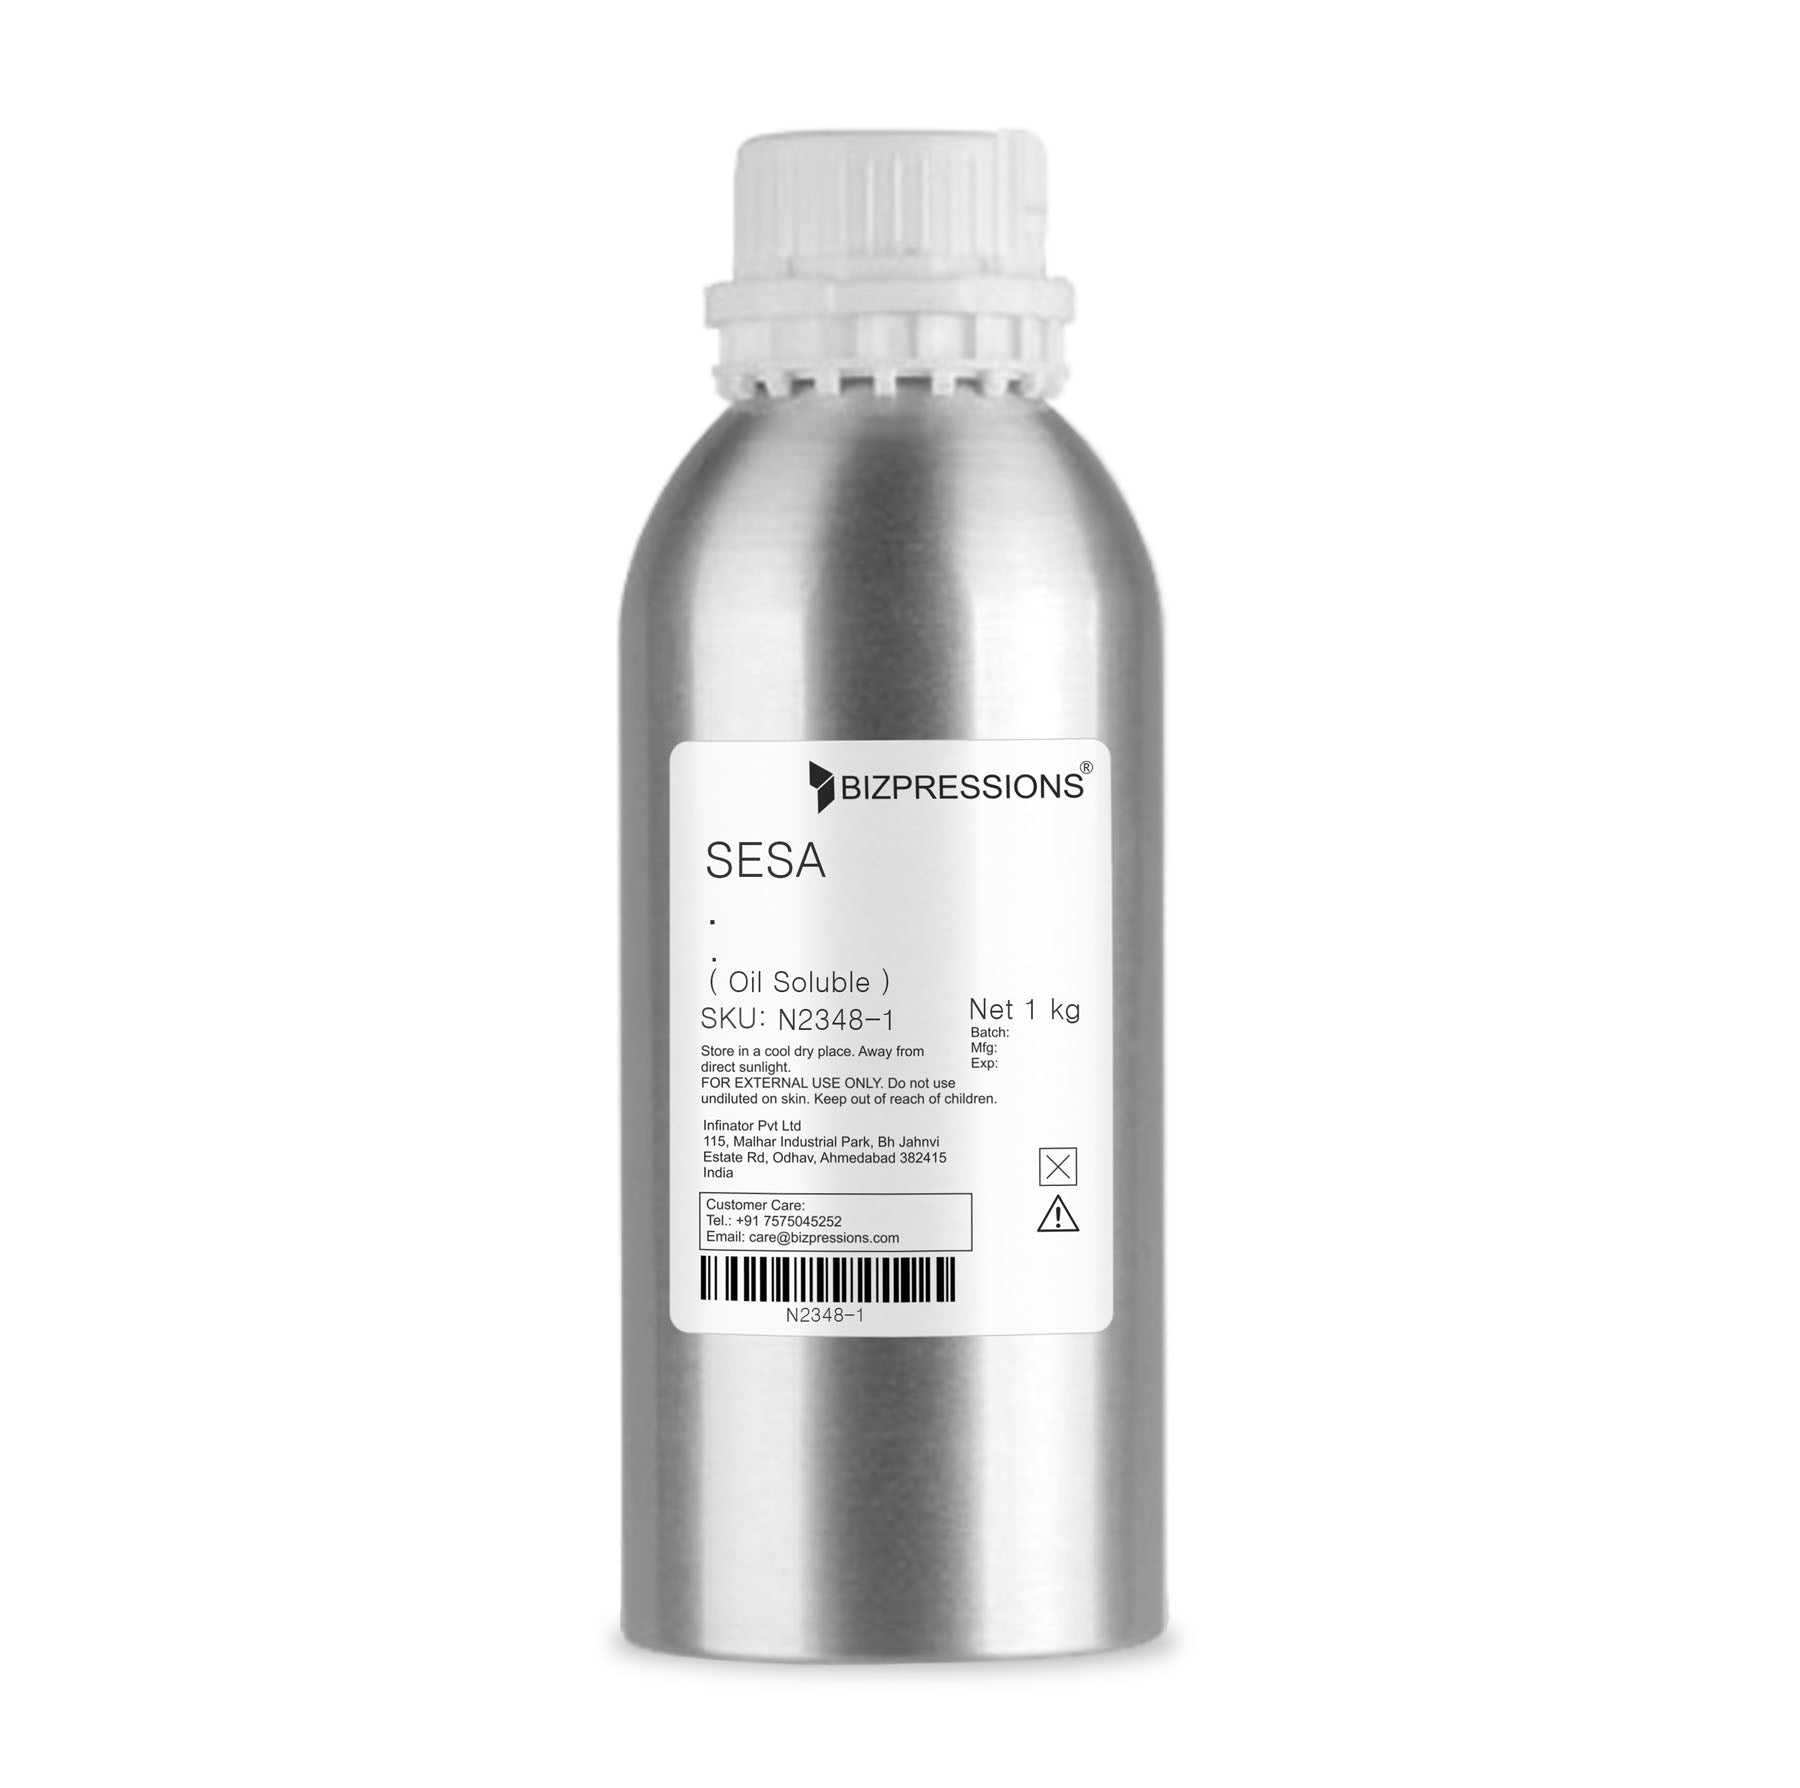 SESA - Fragrance ( Oil Soluble ) - 1 kg